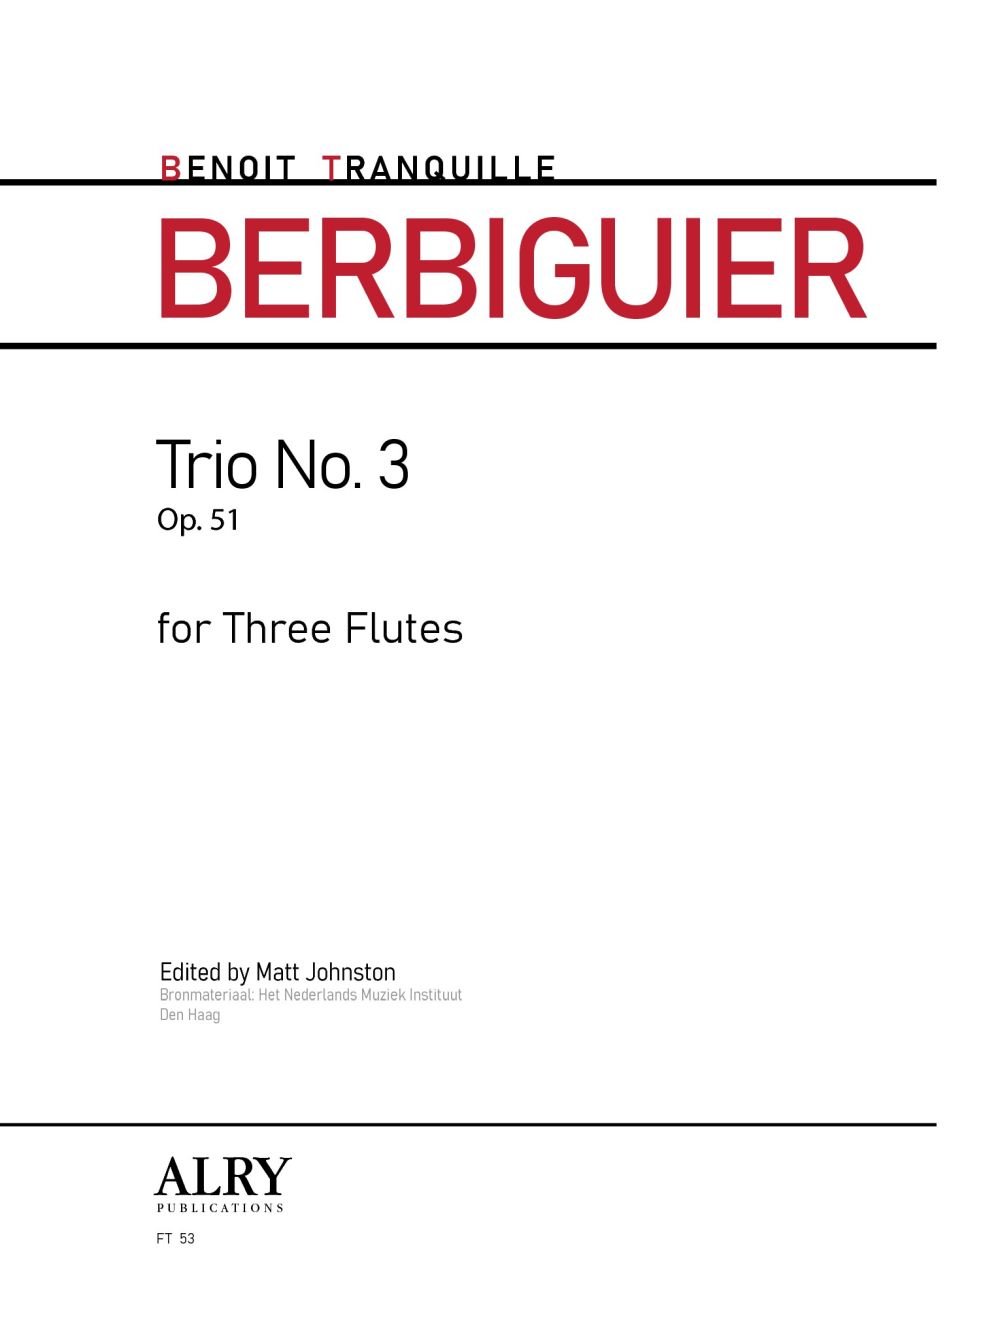 Trio No. 3, Op. 51 (TRANQUILLE BERBIGUIER BENOIT)